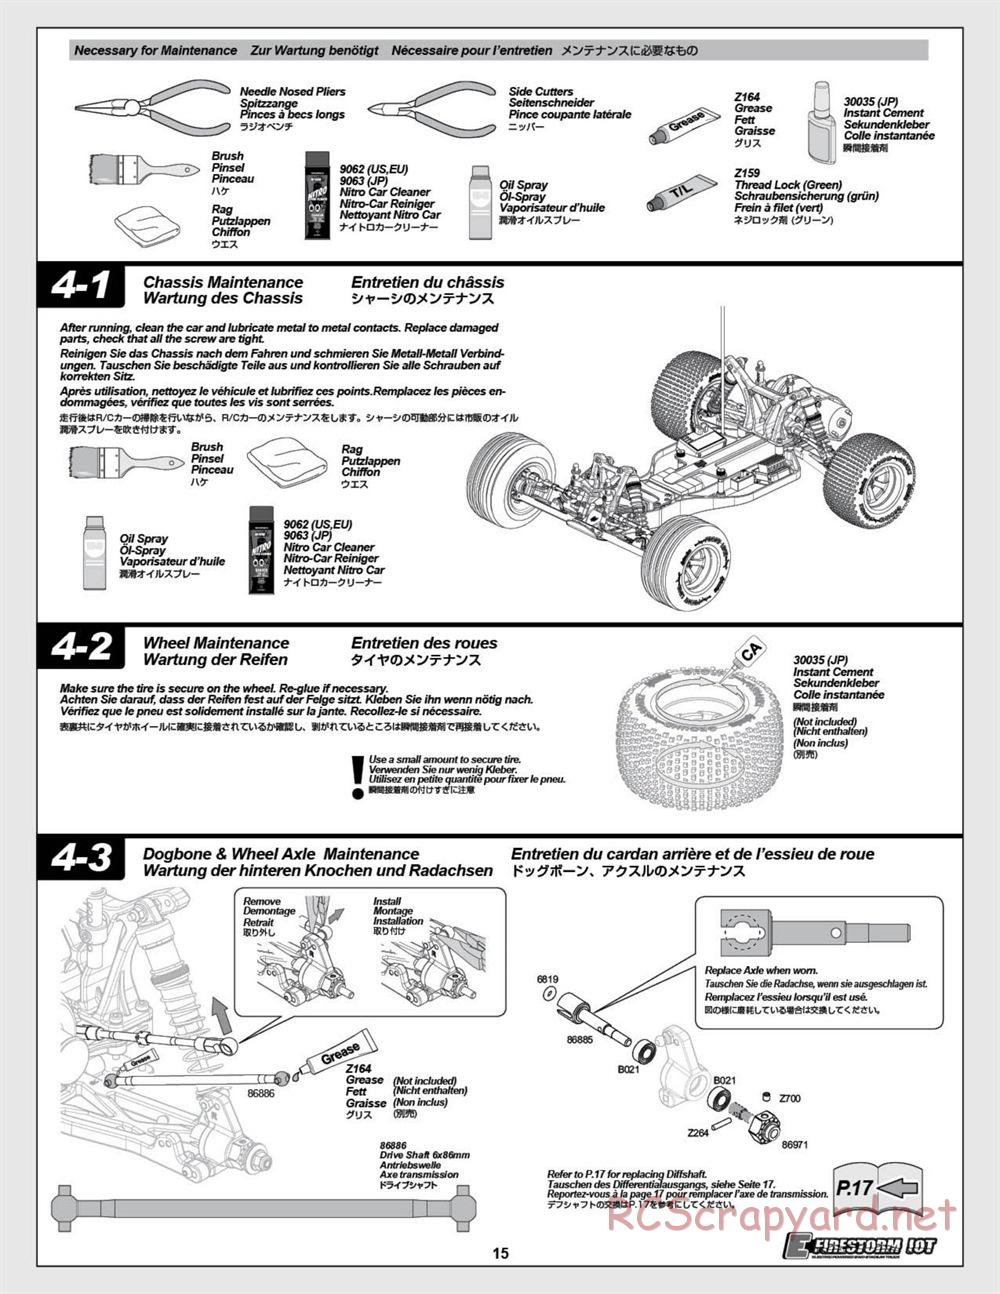 HPI - E-Firestorm 10T - Manual - Page 15